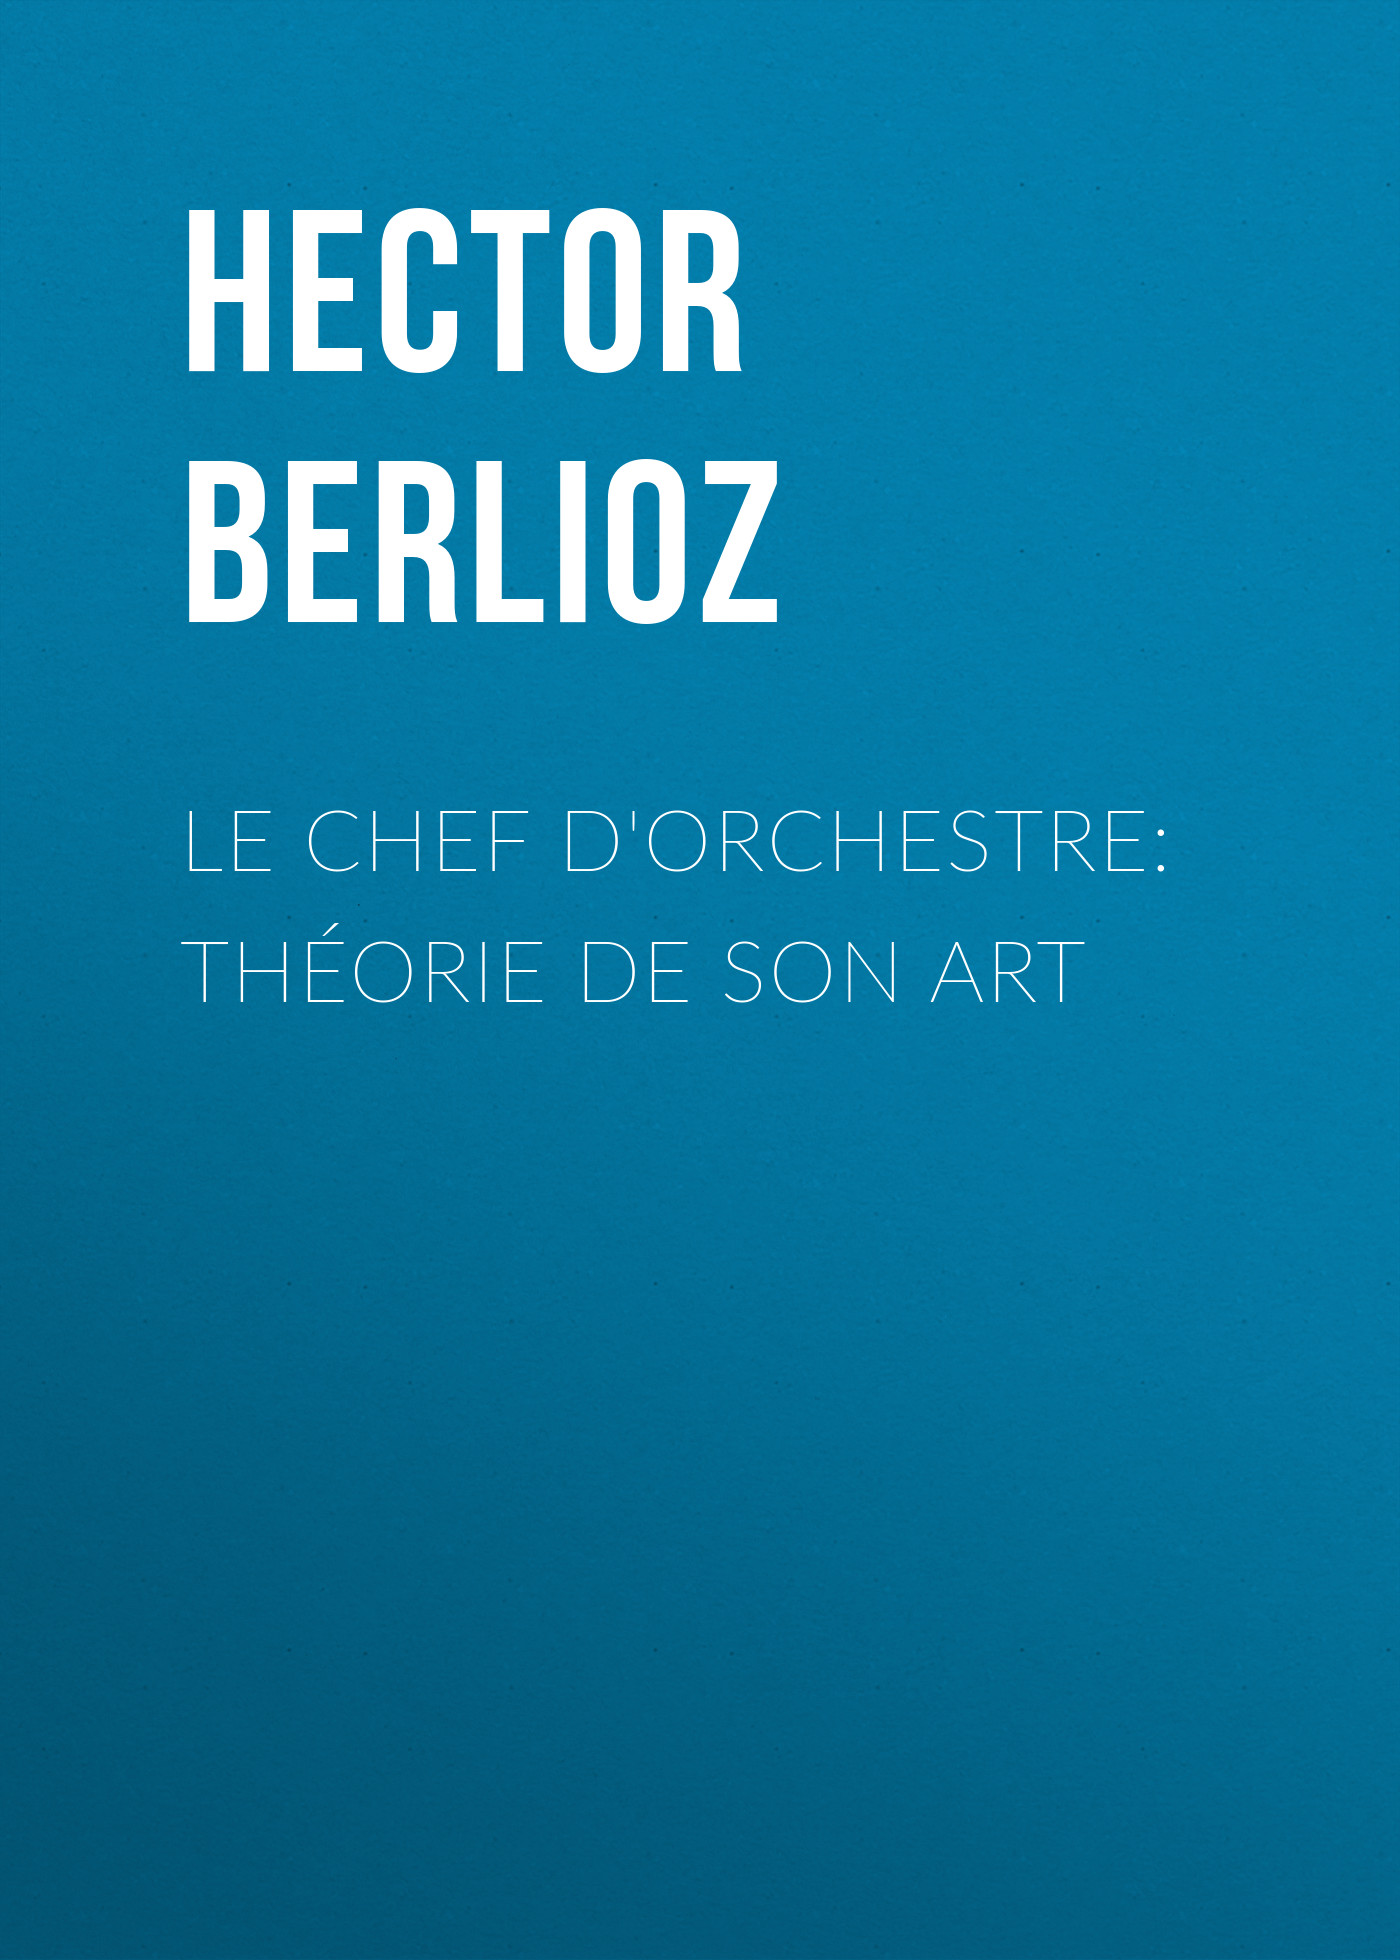 Книга Le chef d'orchestre: théorie de son art из серии , созданная Hector Berlioz, может относится к жанру Зарубежная старинная литература, Зарубежная классика. Стоимость электронной книги Le chef d'orchestre: théorie de son art с идентификатором 24168588 составляет 0.90 руб.